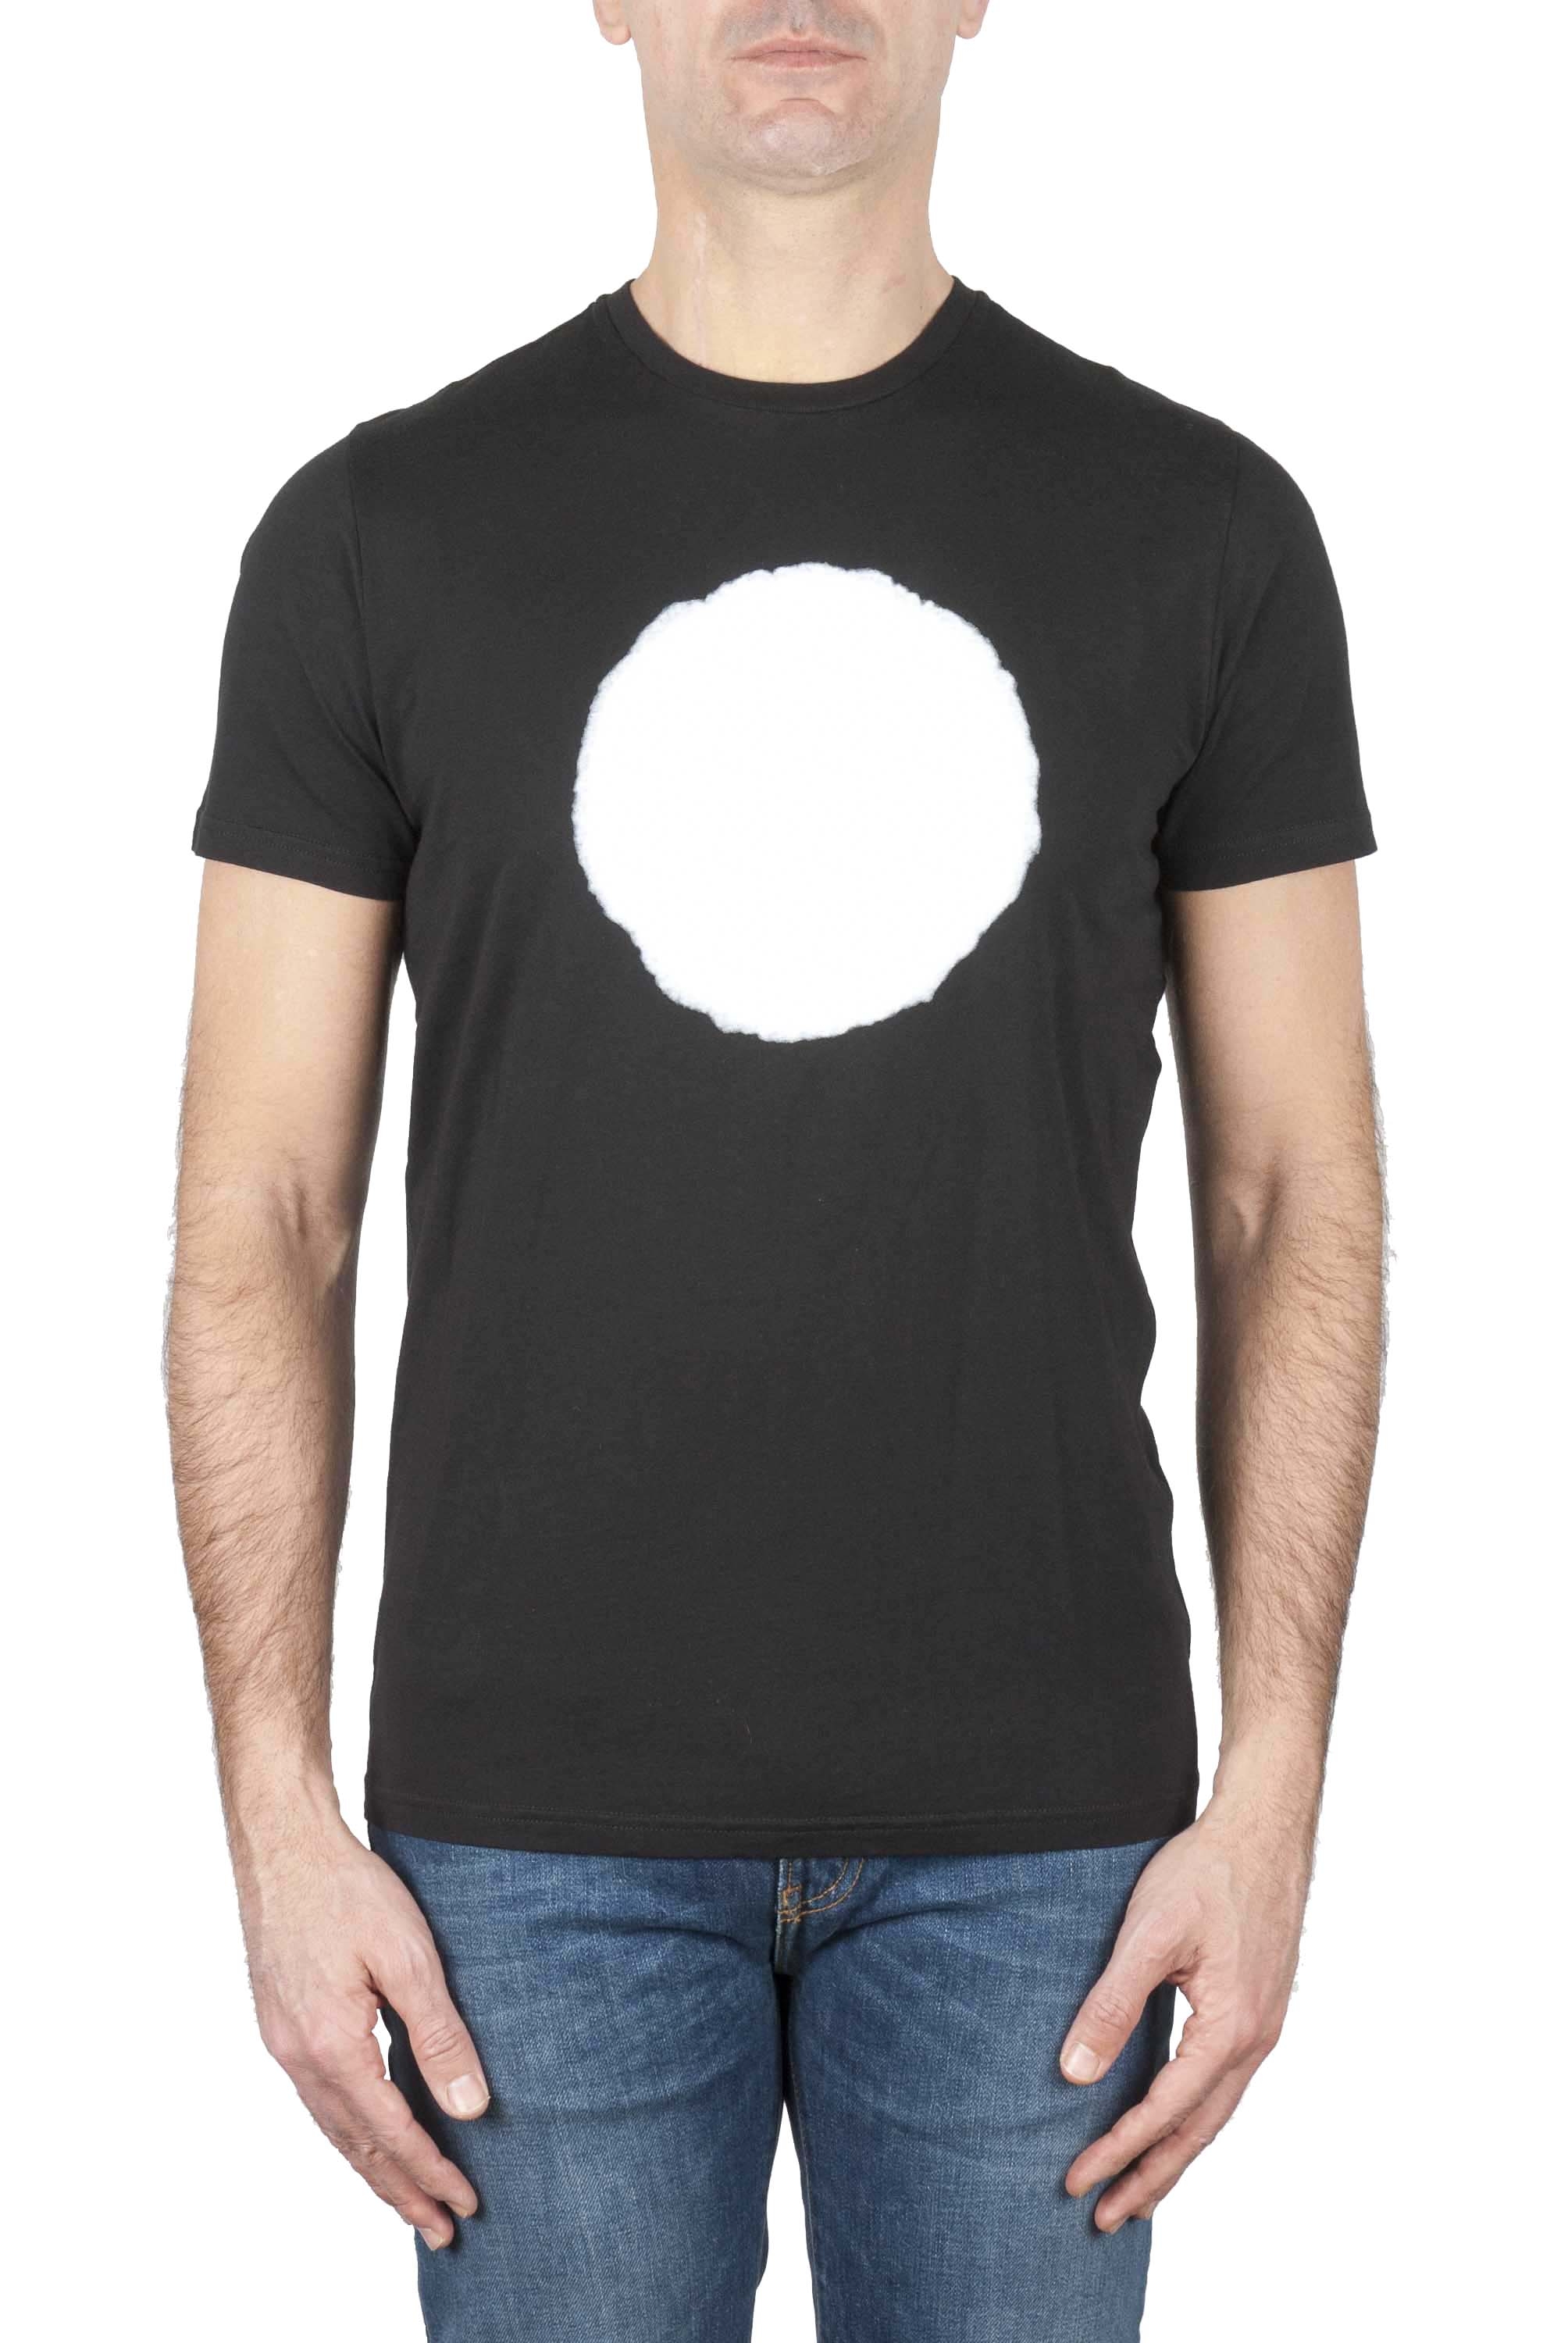 SBU 01166_19AW T-shirt girocollo classica a maniche corte in cotone grafica stampata bianca e nera 01